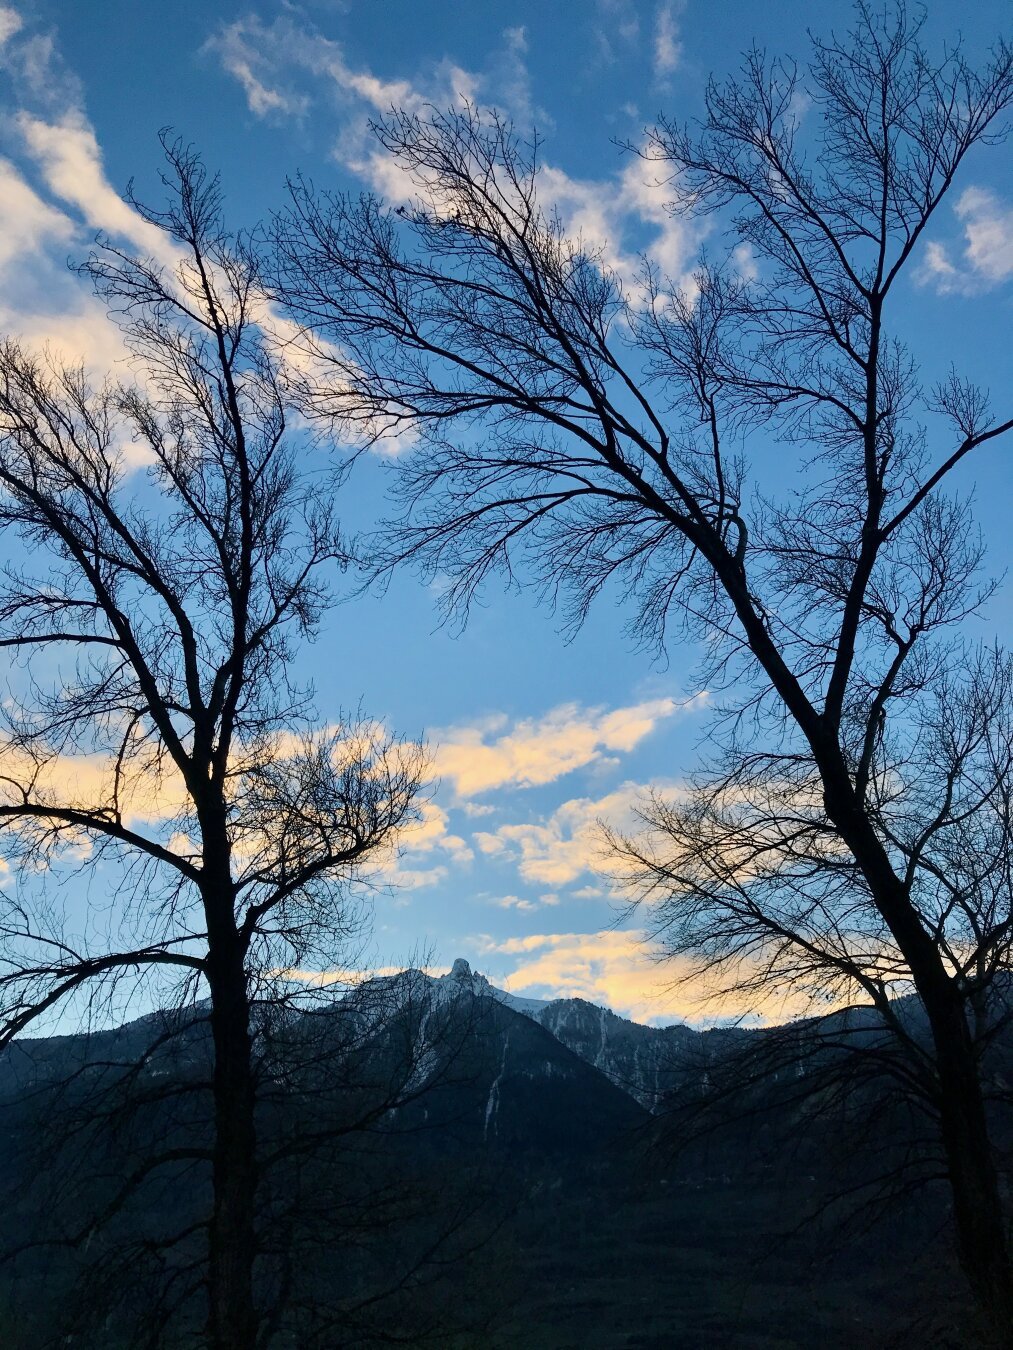 Deux arbres devant une chaîne de montagnes au lever du soleil.